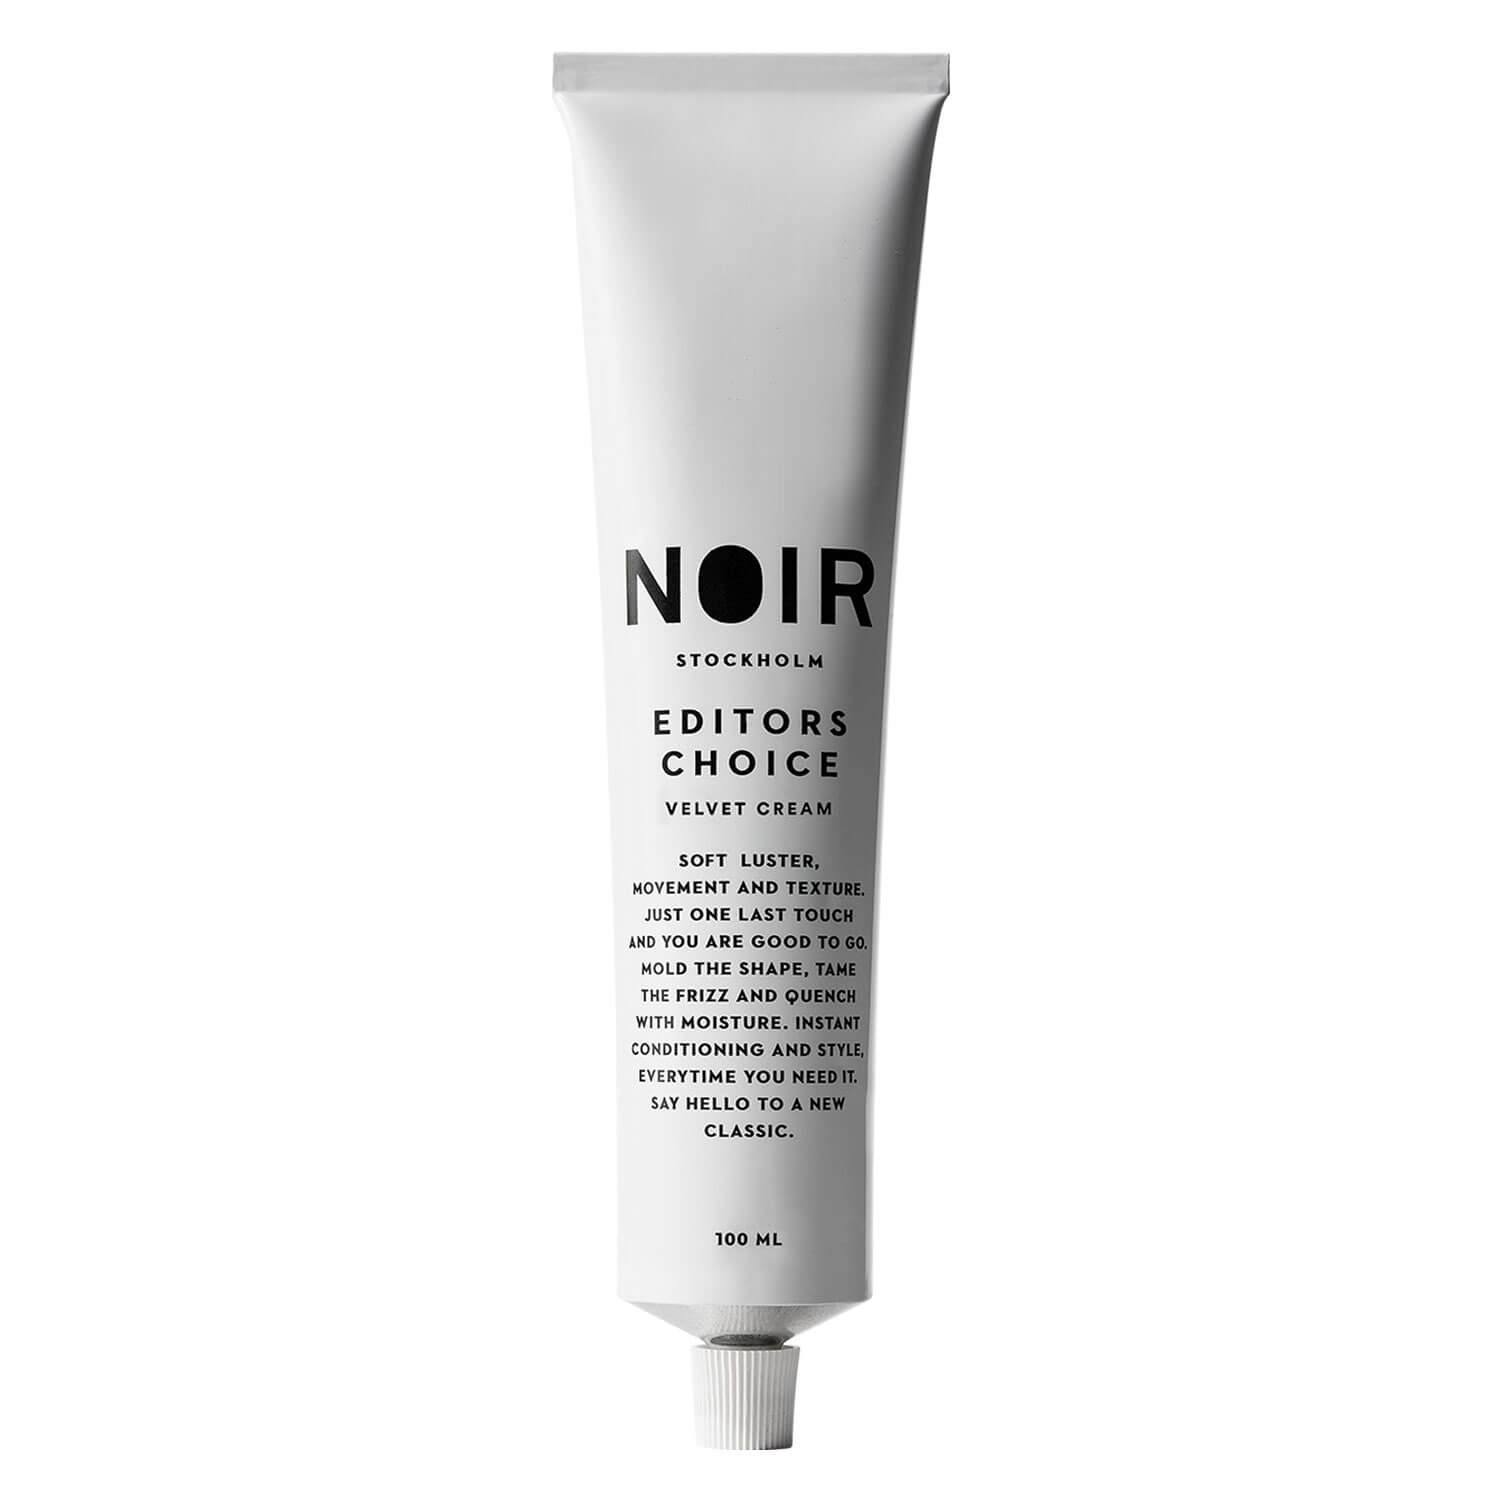 Produktbild von NOIR - Editors Choice Velvet Cream